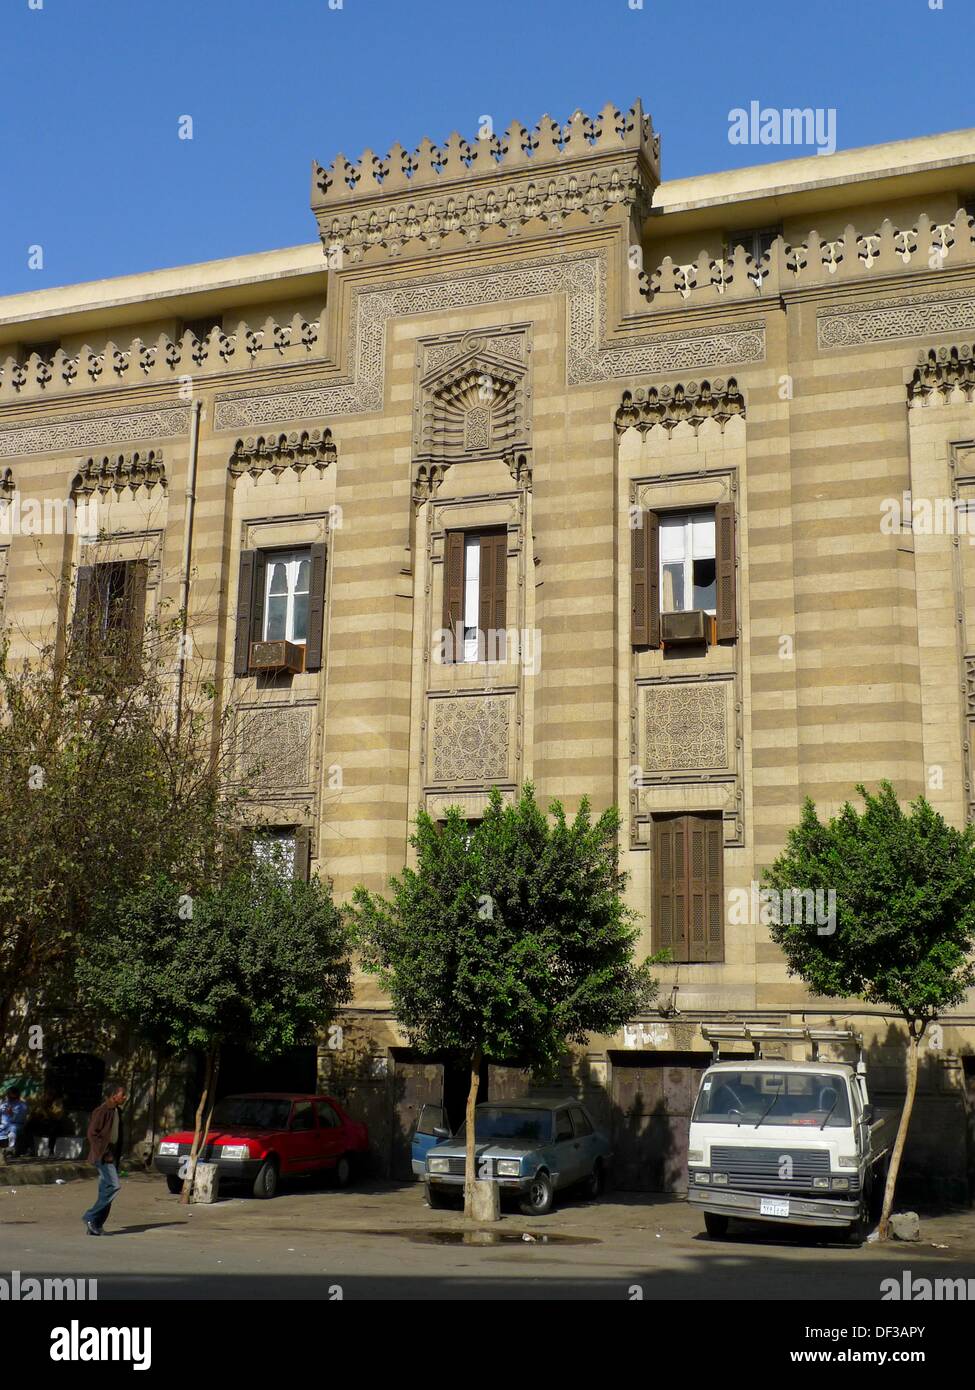 La arquitectura mameluca, barrio islámico, El Cairo, Egipto Foto de stock